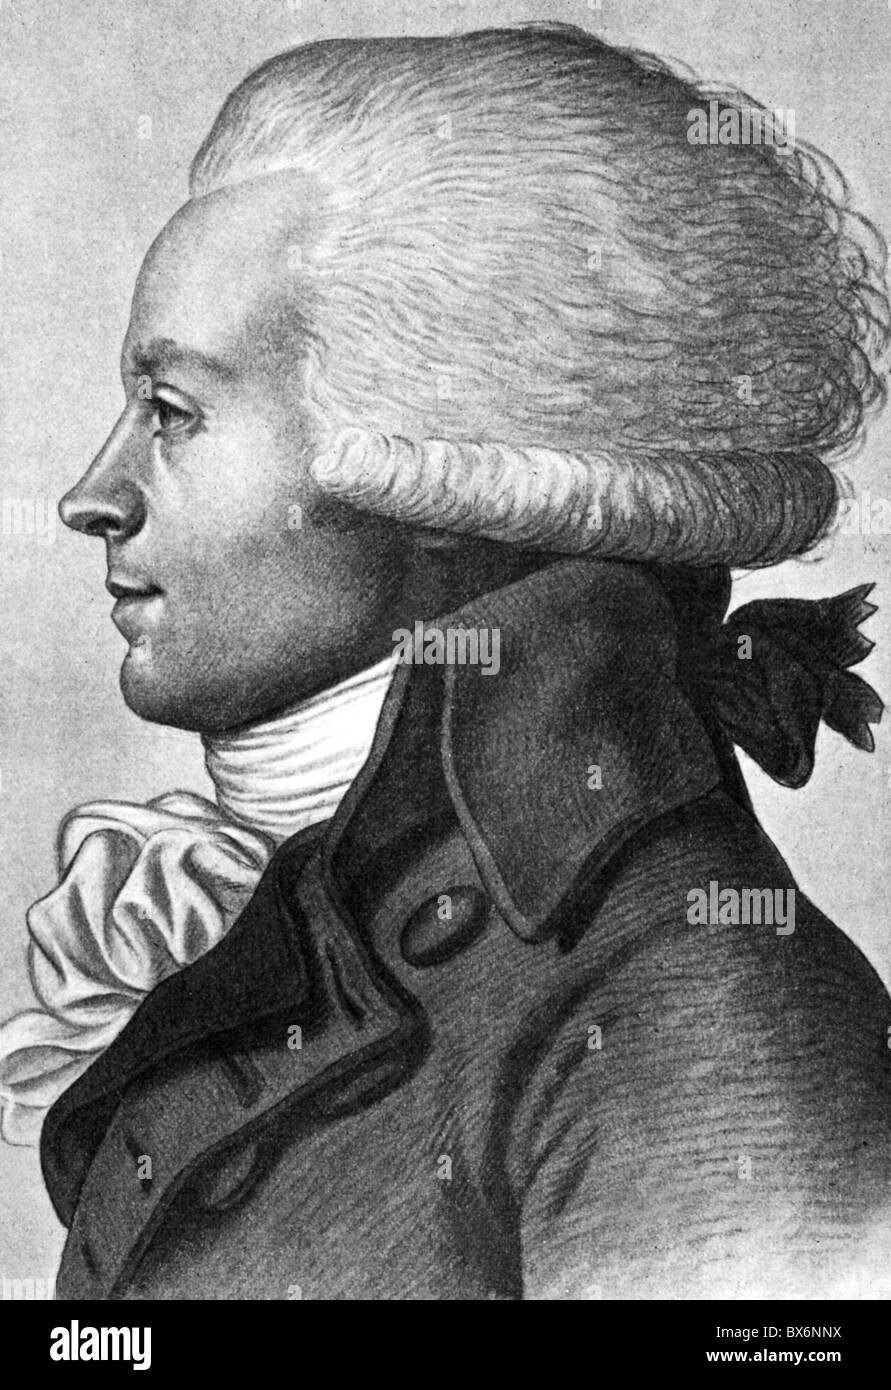 Robespierre, Maximilian de, 6.5.1758 - 28.7.1704, französischer Politiker, Mitglied des Ausschusses für öffentliche Sicherheit 27.7.1793 - 27.7.1704, Porträt, zeitgenössische Zeichnung, Stockfoto